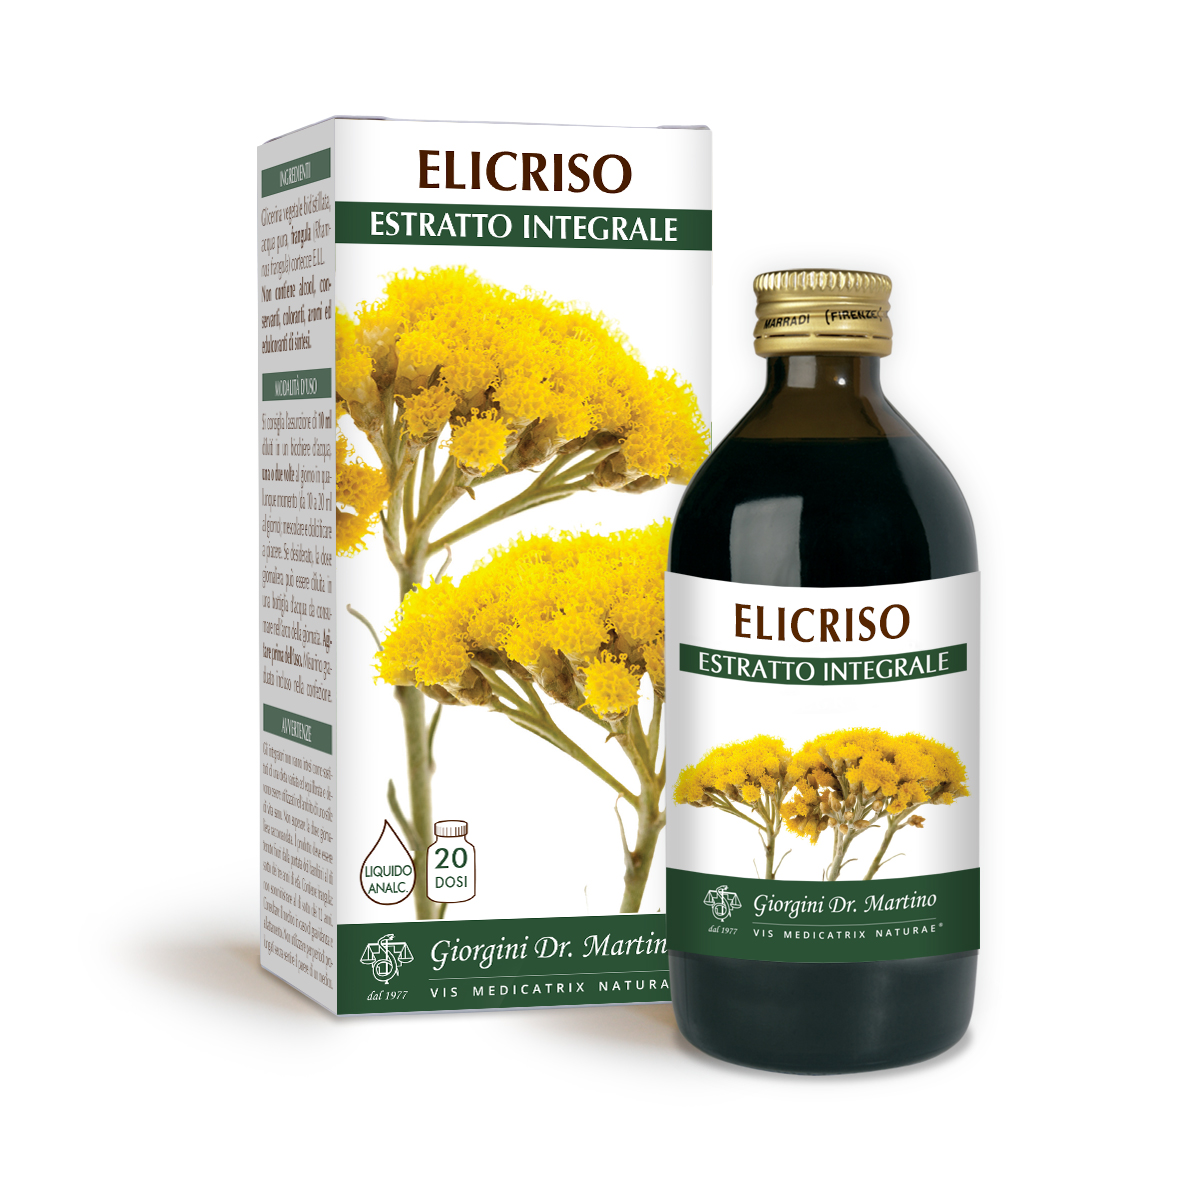 ELICRISO ESTRATTO INTEGRALE 200 ml